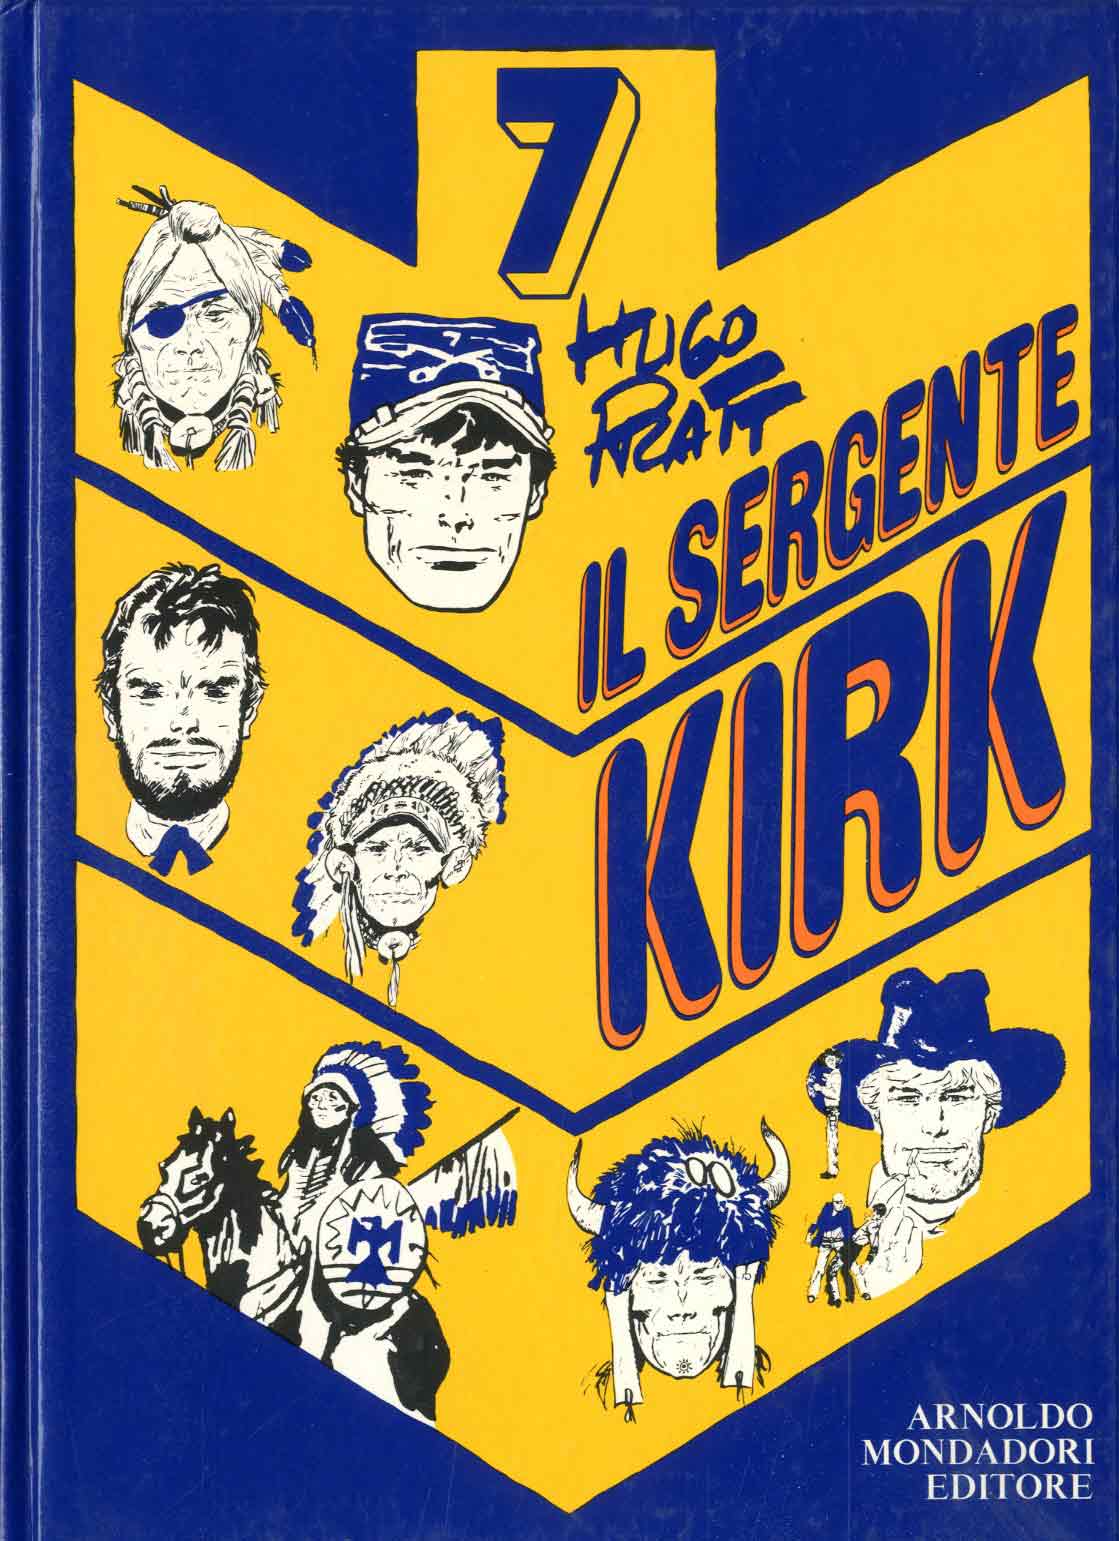 Sergrnte Kirk I.ed.